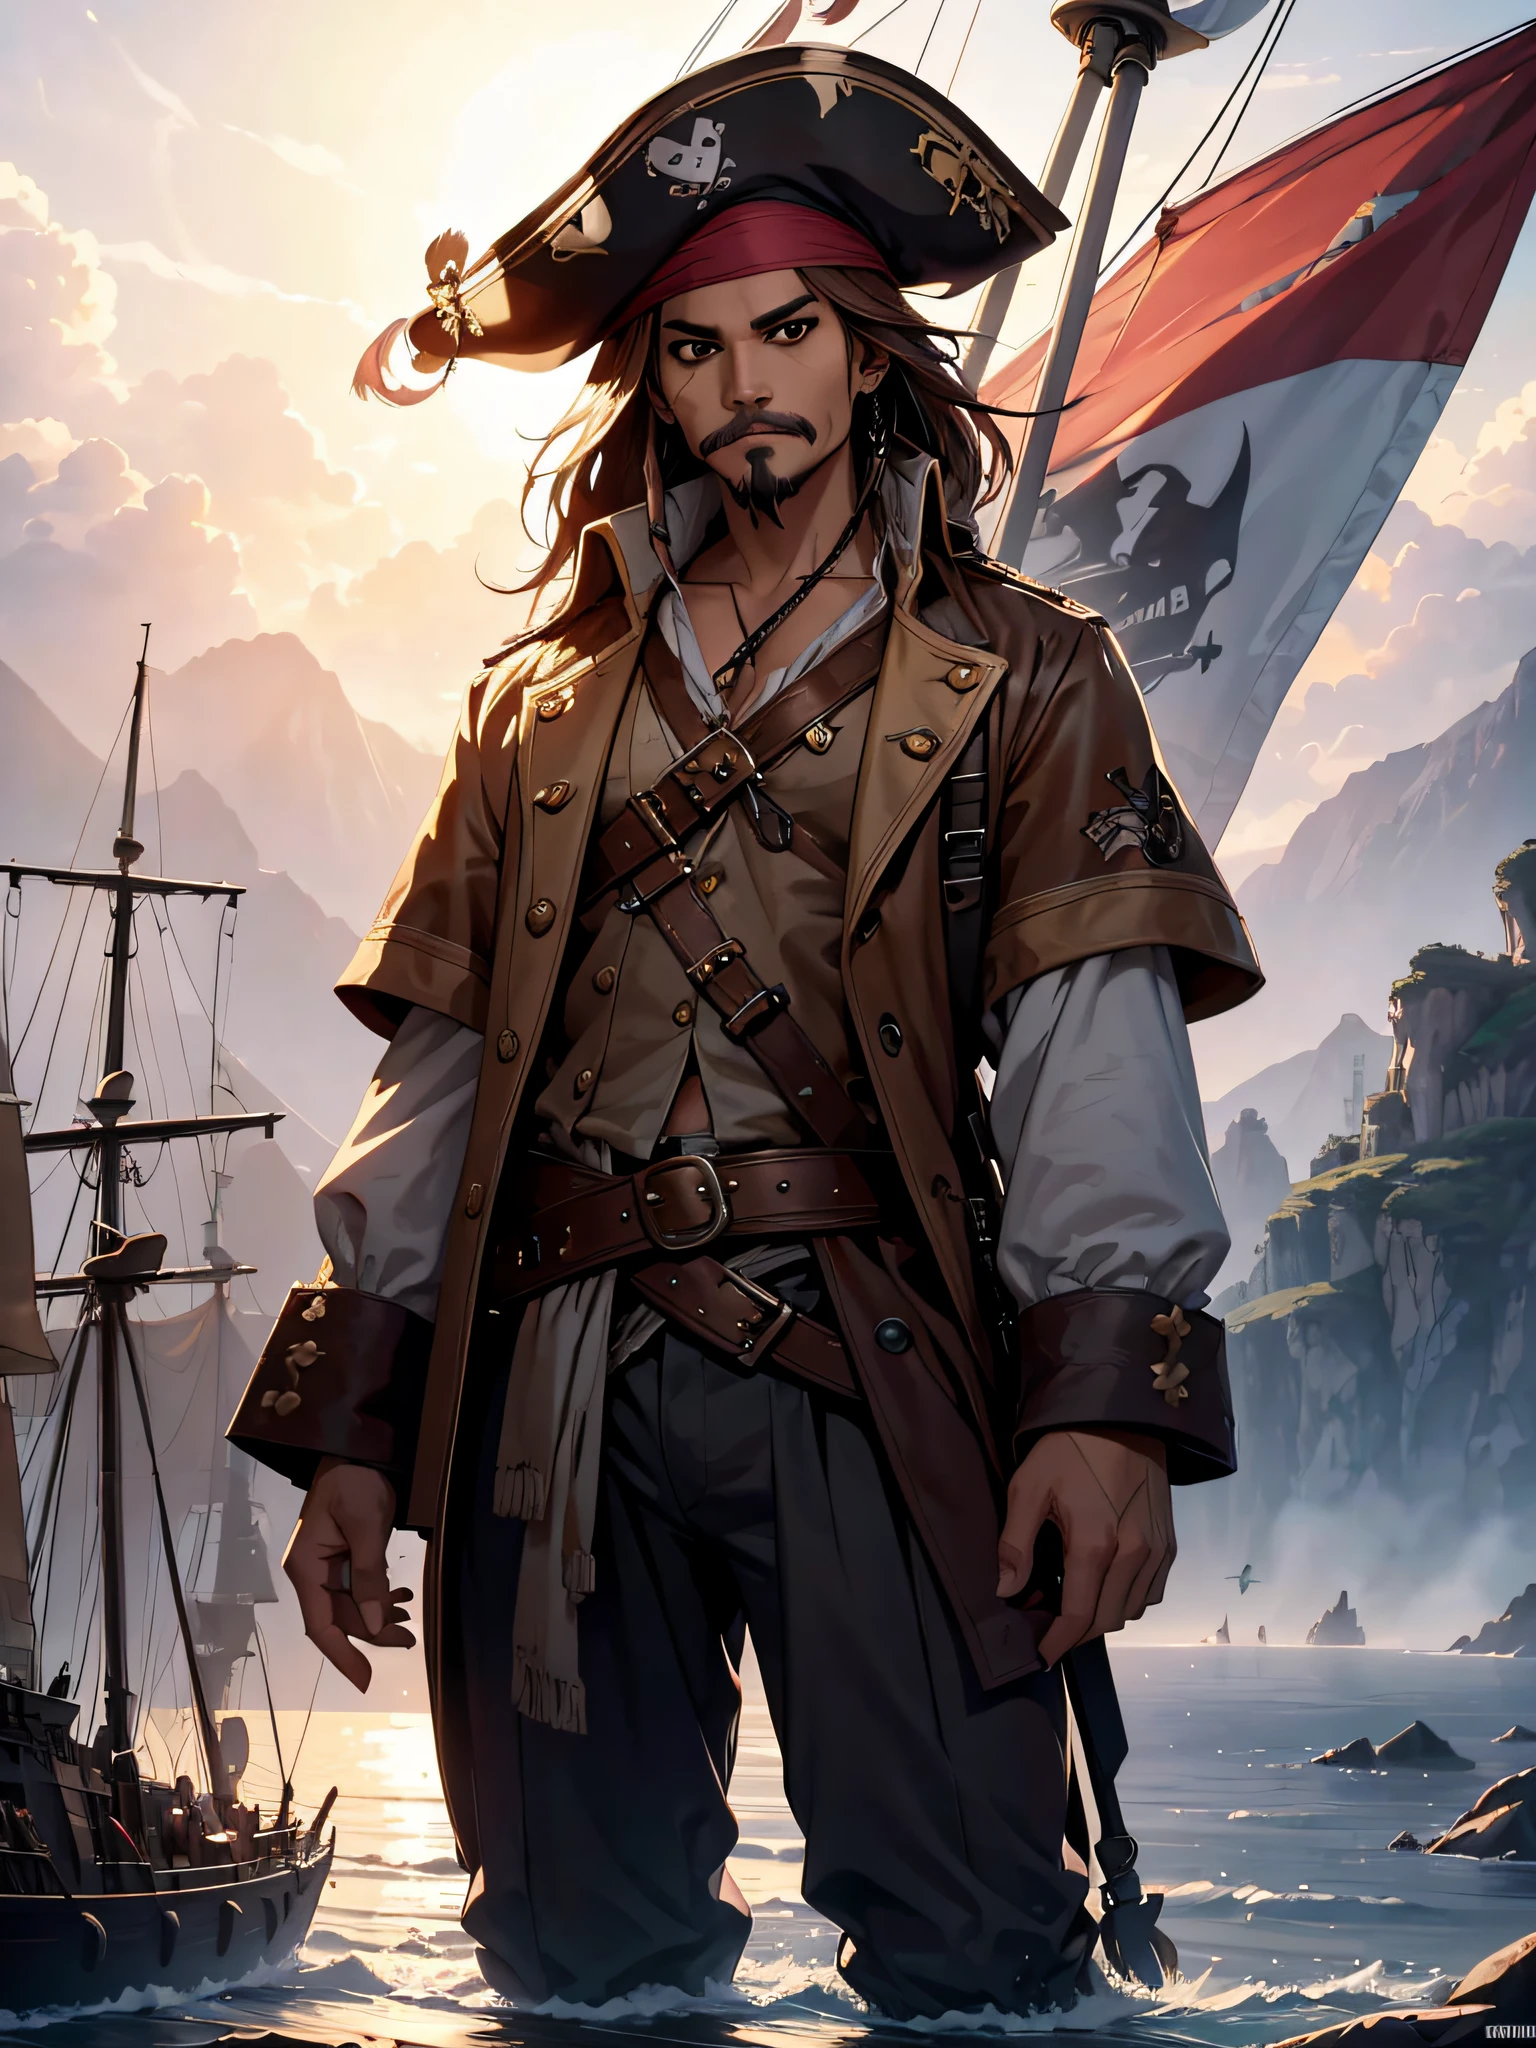 Jack Sparrow, am Ende seines Piratenschiffs stehend, hält seinen Schnurrbart, grinsend, Piratenflagge am Mast, Ganzkörper, {extrem detailliertes 8k CG-Unit-Hintergrundbild}, expansive Landschaftsfotografie, (eine zentrierte Sicht mit Fokus auf Charakter und Setting), (Weite, offene Feldsicht), (Hochwinkelaufnahme), (Markieren: 1.6), (gedimmtes Licht: 1.6), (warme Lichtquelle: 1.8), komplexe Details, (schillernde Farben: 1.5), (Helle Beleuchtung), (stimmungsvolle Beleuchtung), verträumt, Epos